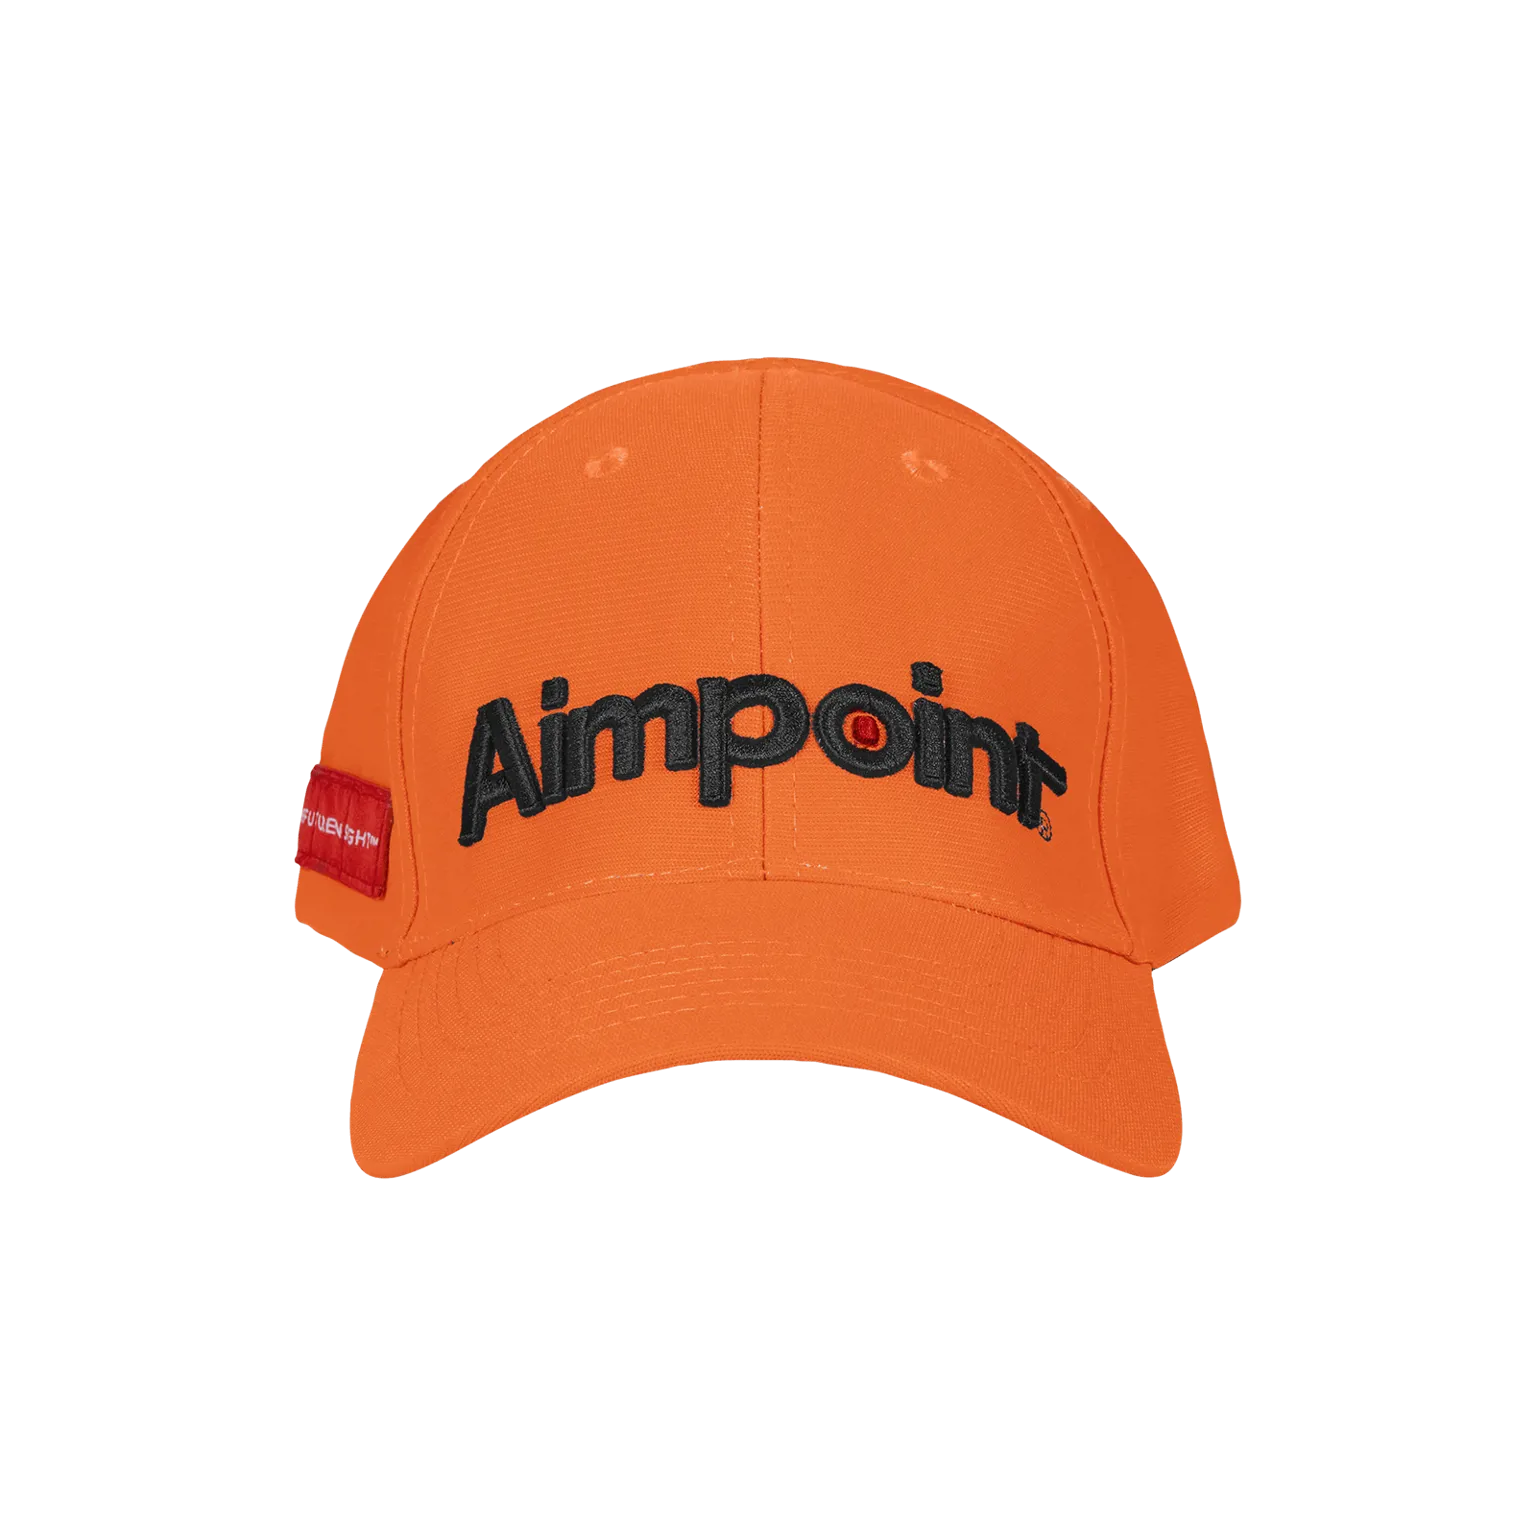 Aimpoint® Cap - Orange Hunting cap  - 2